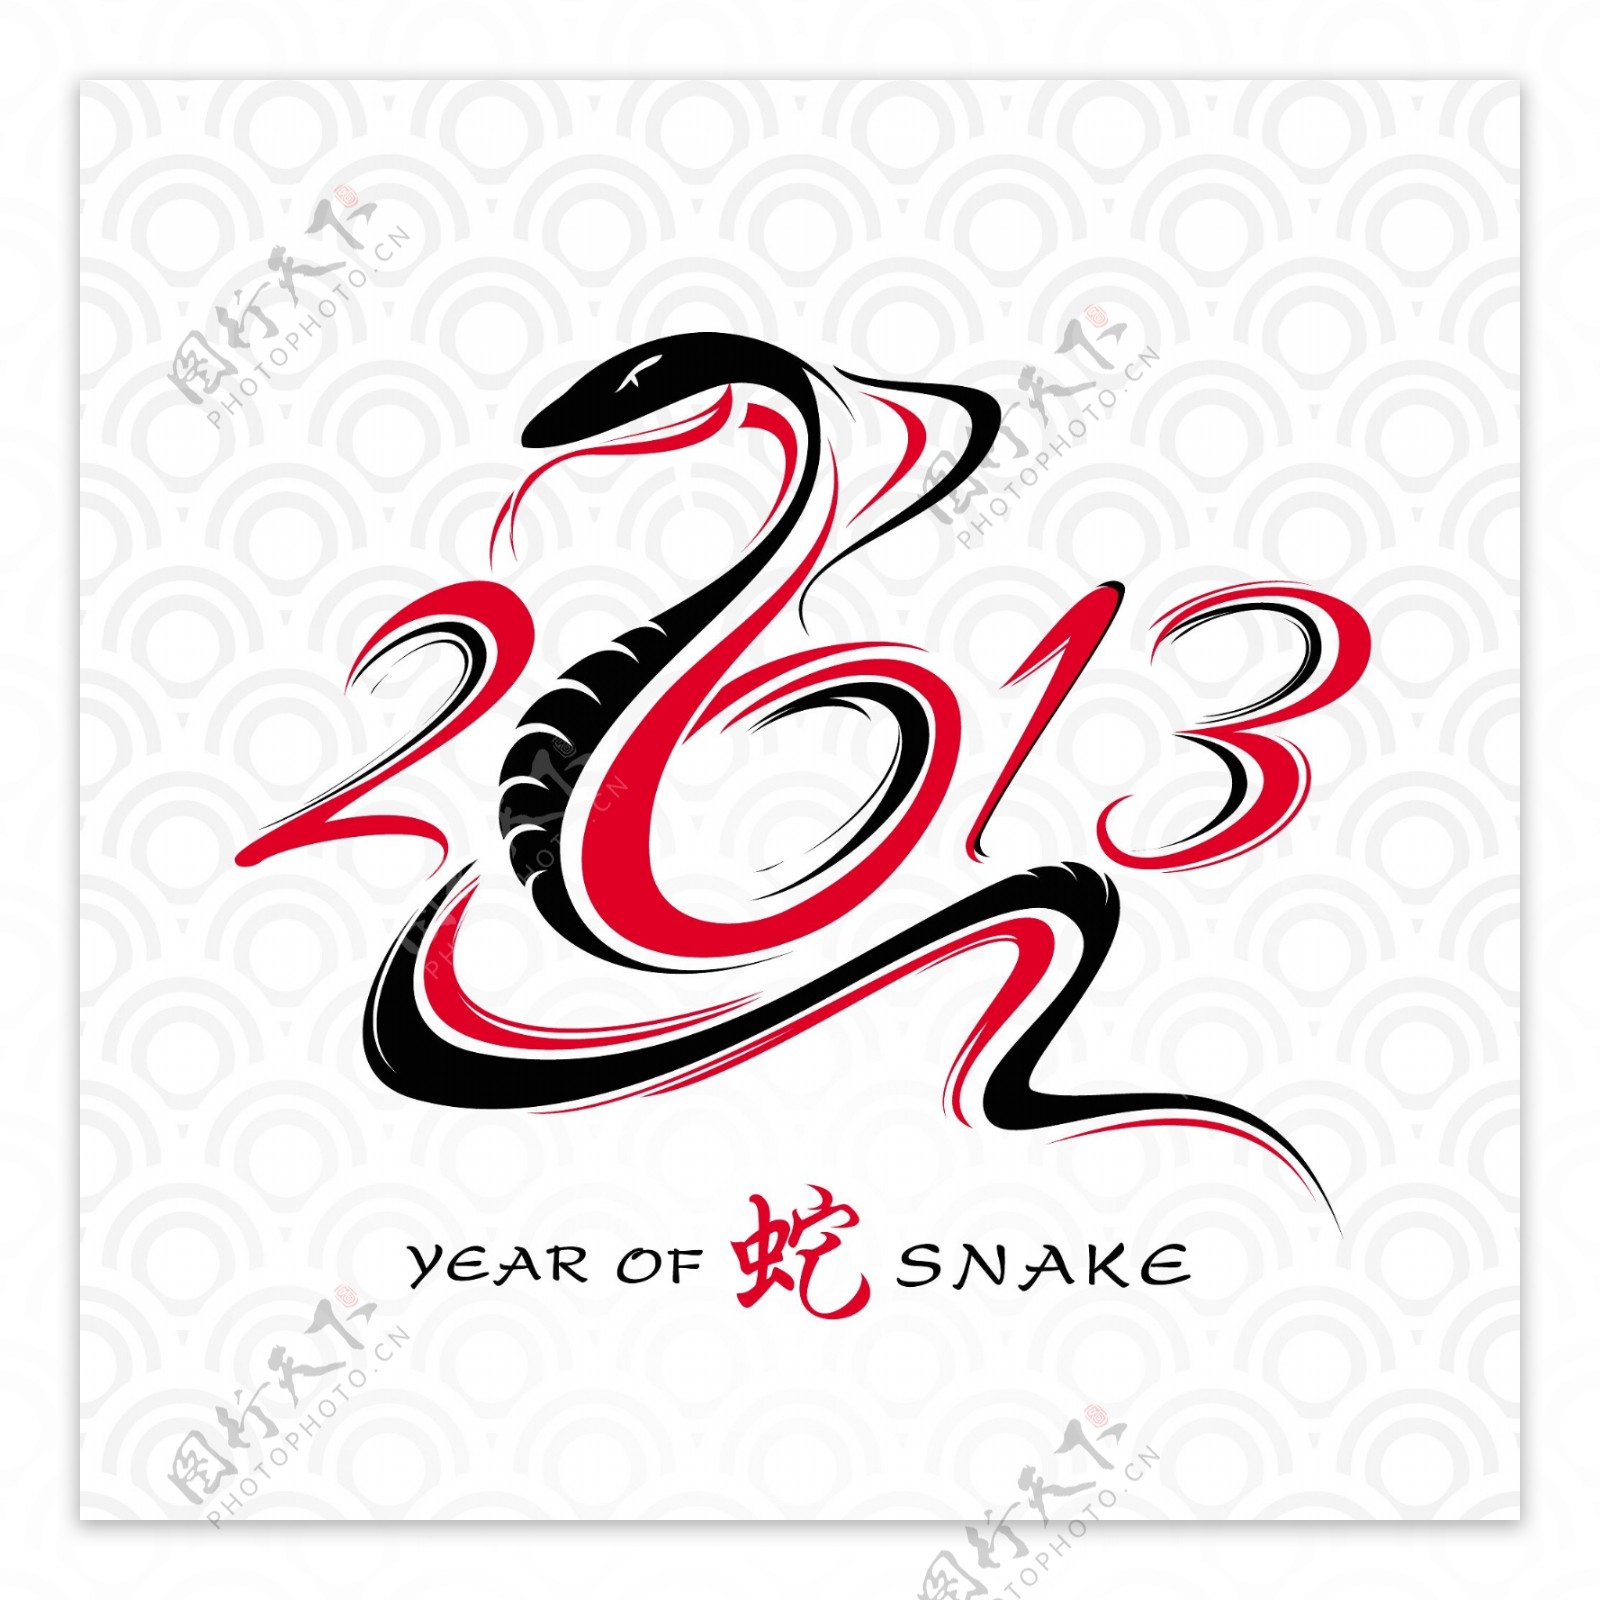 2013蛇年贺卡设计矢量素材三